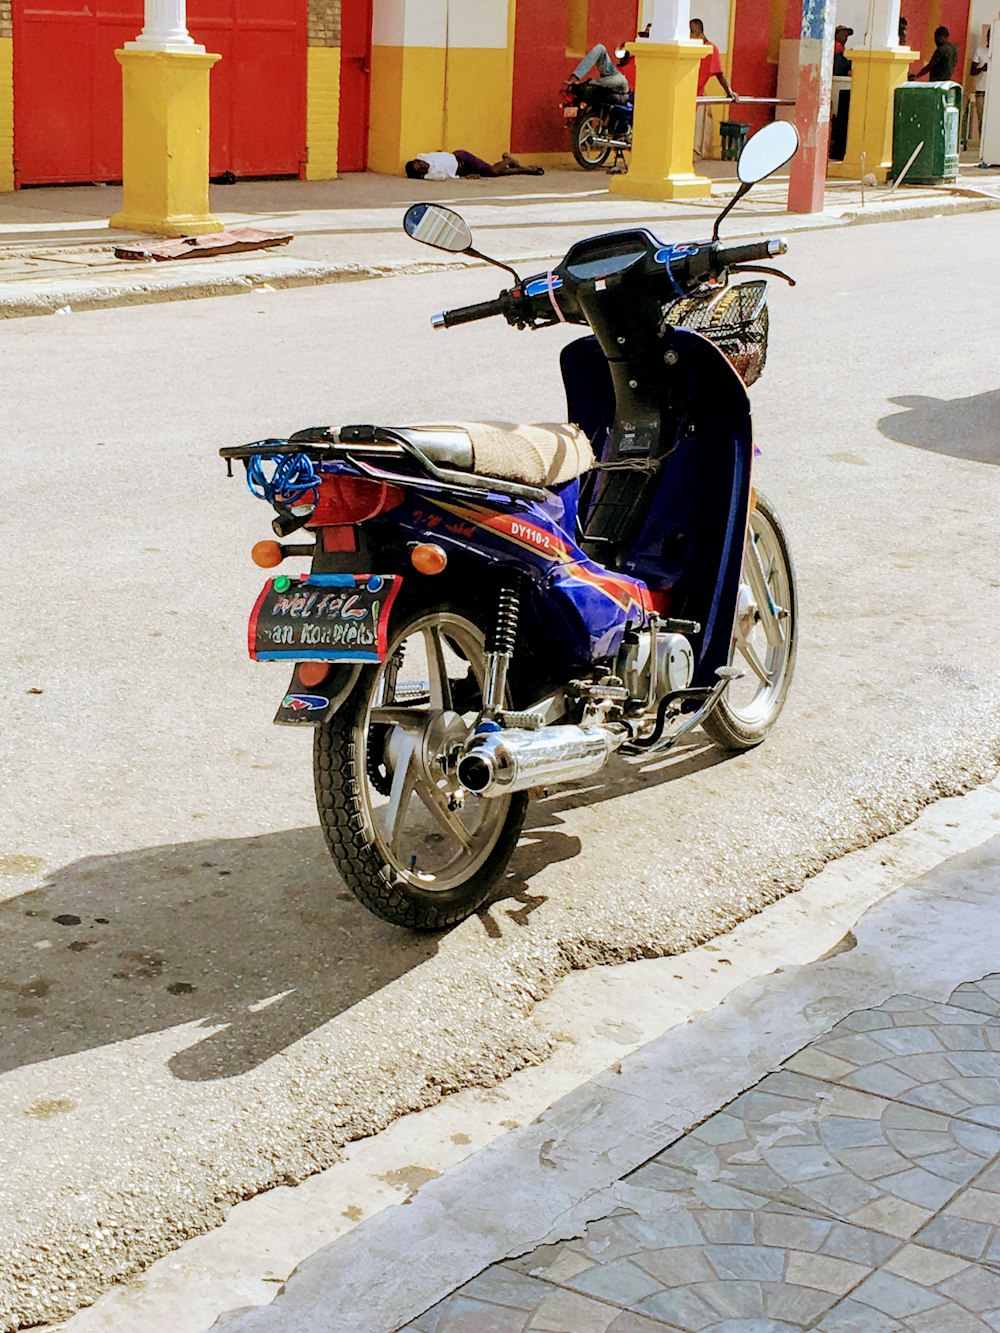 Moto noire et rouge garée sur une route en béton gris pendant la journée